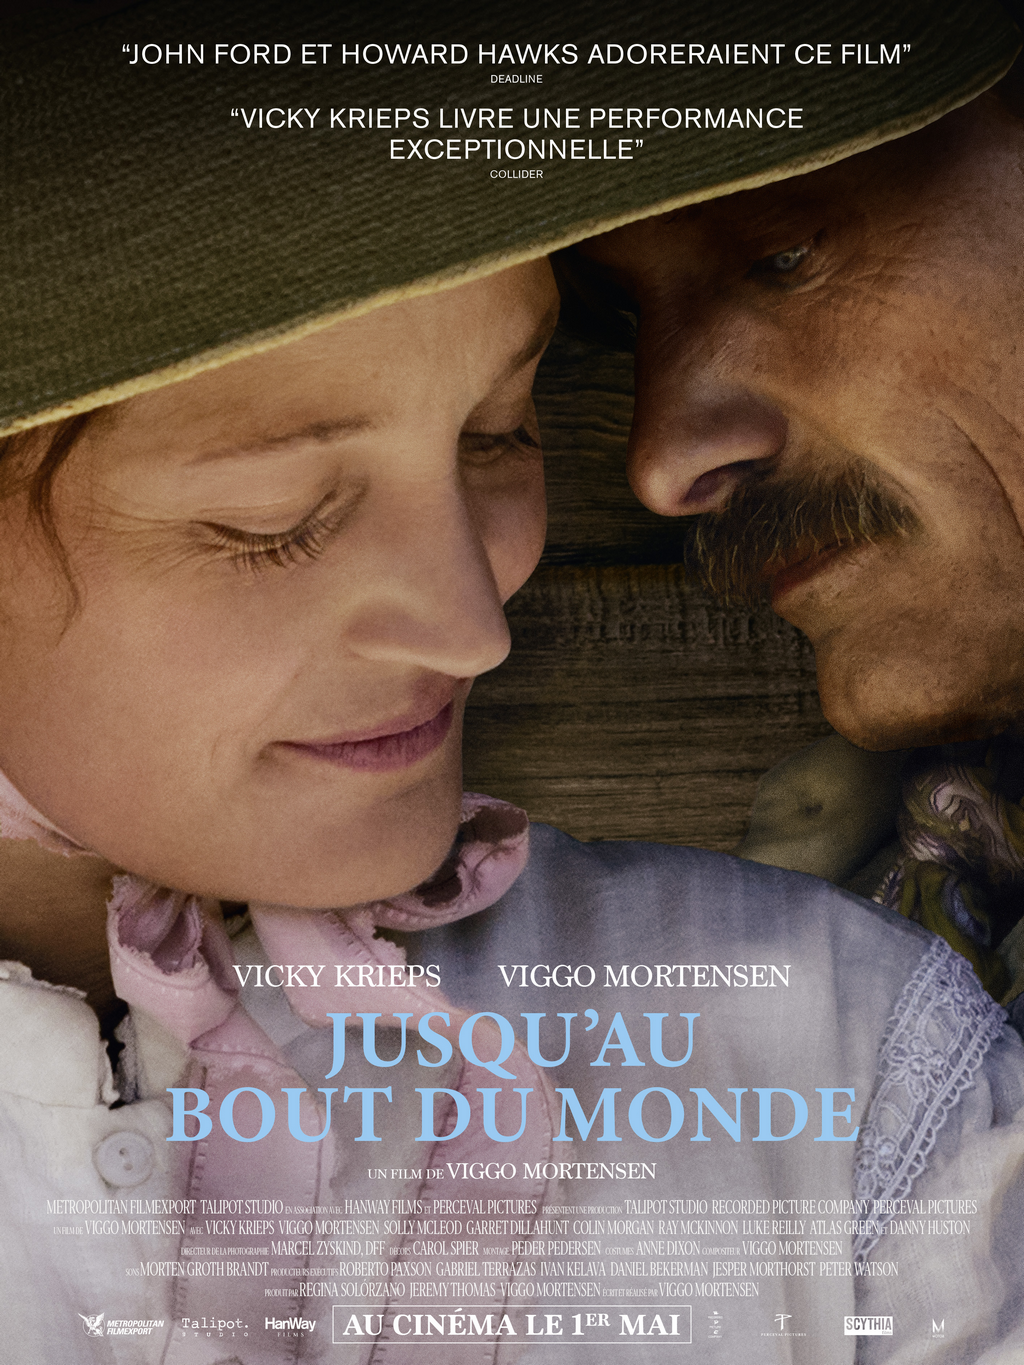 🎬JUSQU’AU BOUT DU MONDE - le nouveau film de Viggo Mortensen avec Vicky Krieps, le 1er mai au Cinéma